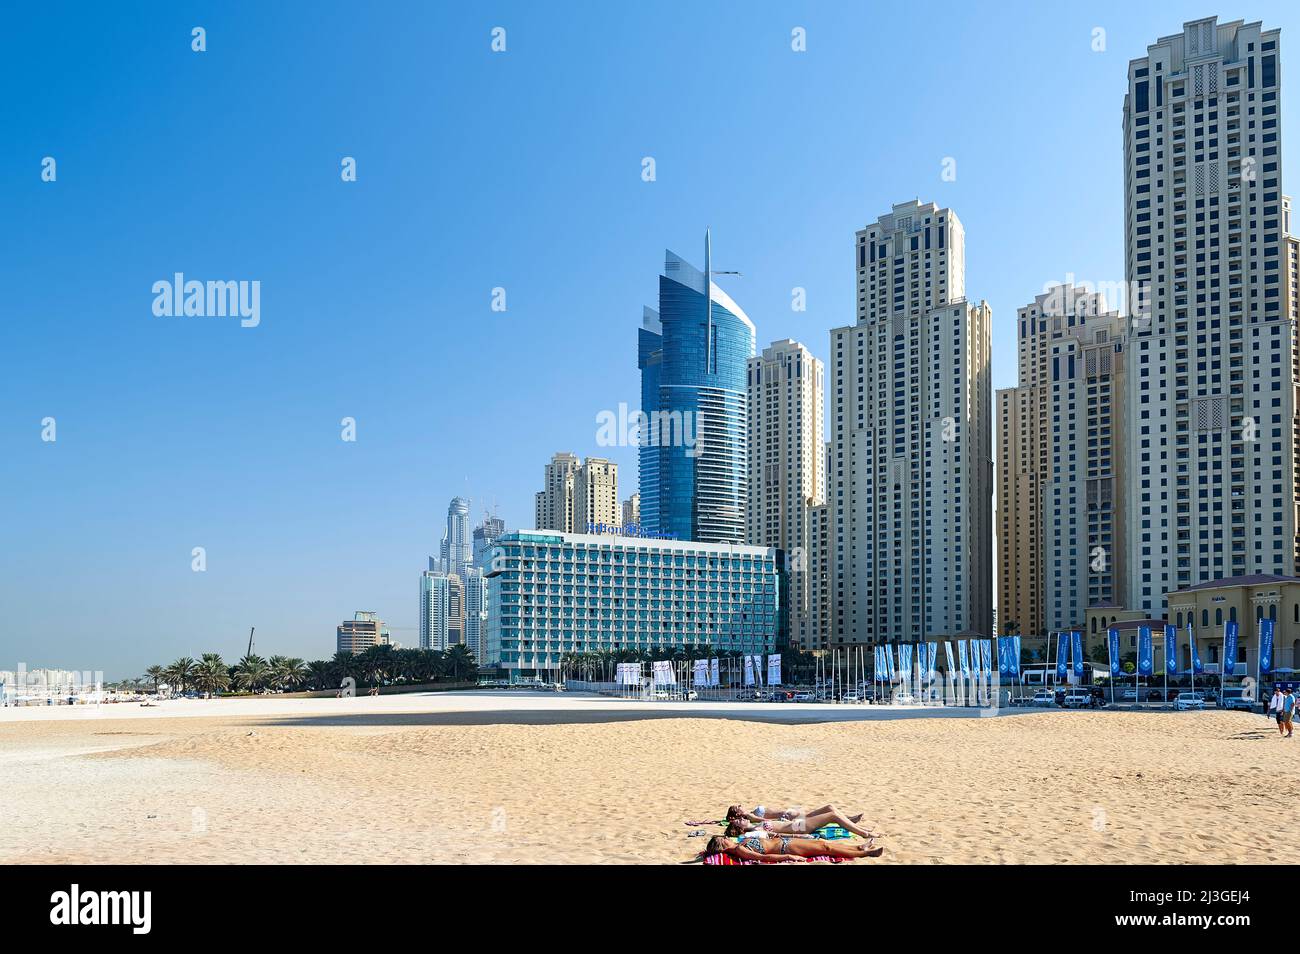 Dubai. UAE. Sunbathers at Dubai Marina Stock Photo